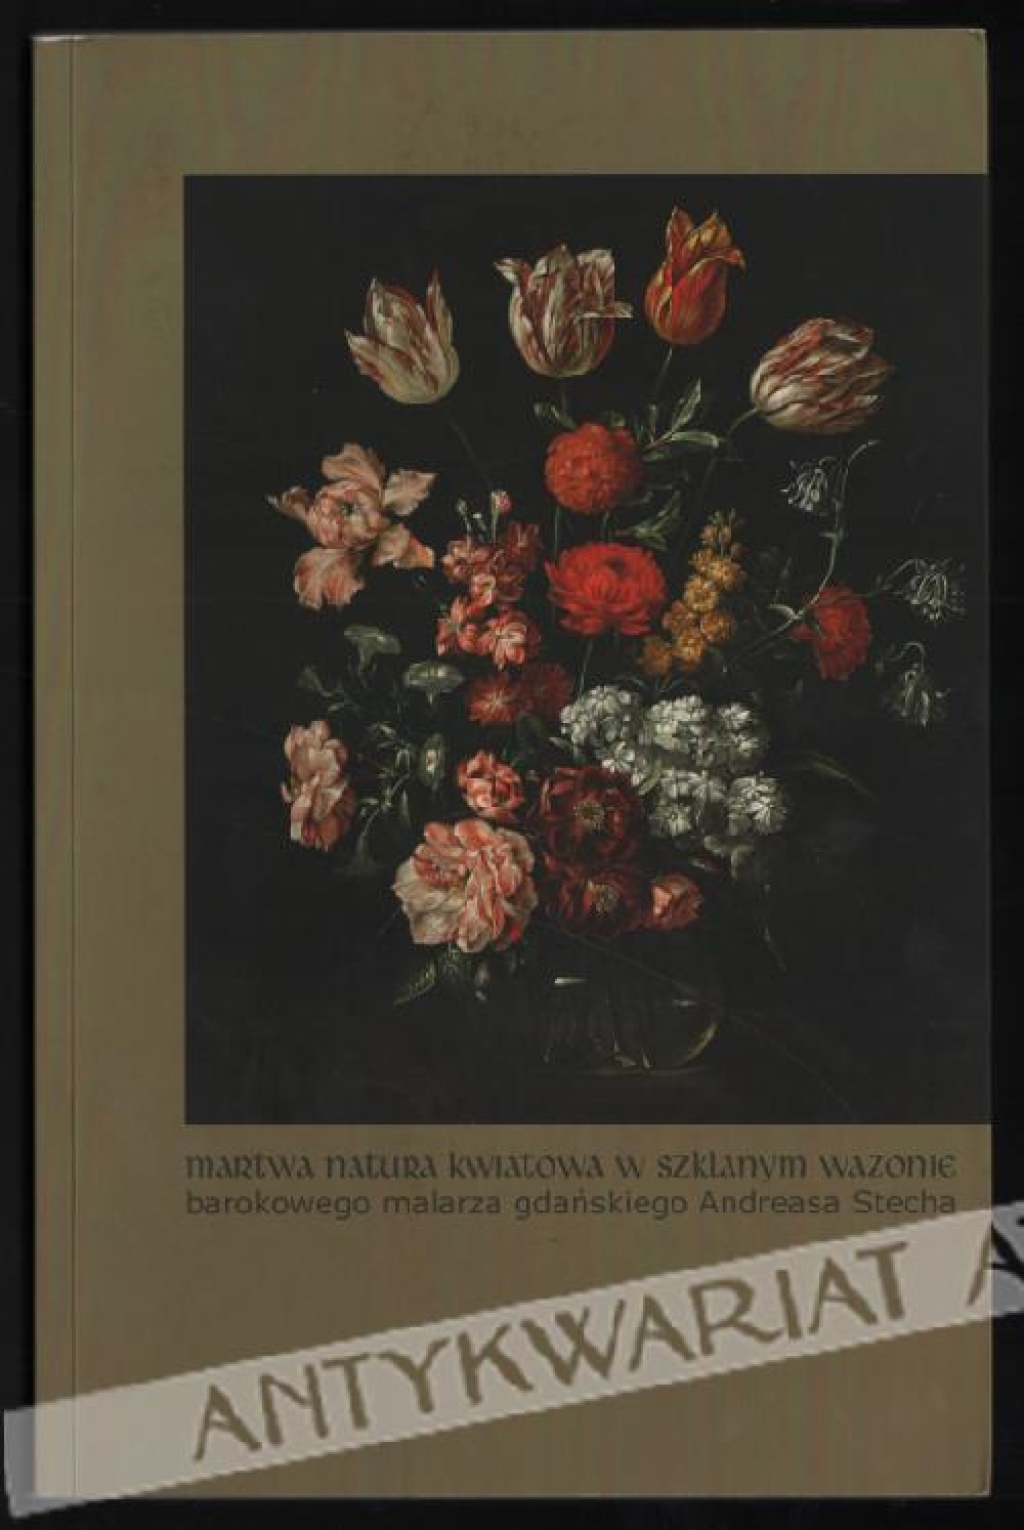 Martwa natura kwiatowa w szklanym wazonie barokowego malarza gdańskiego Andreasa Stecha